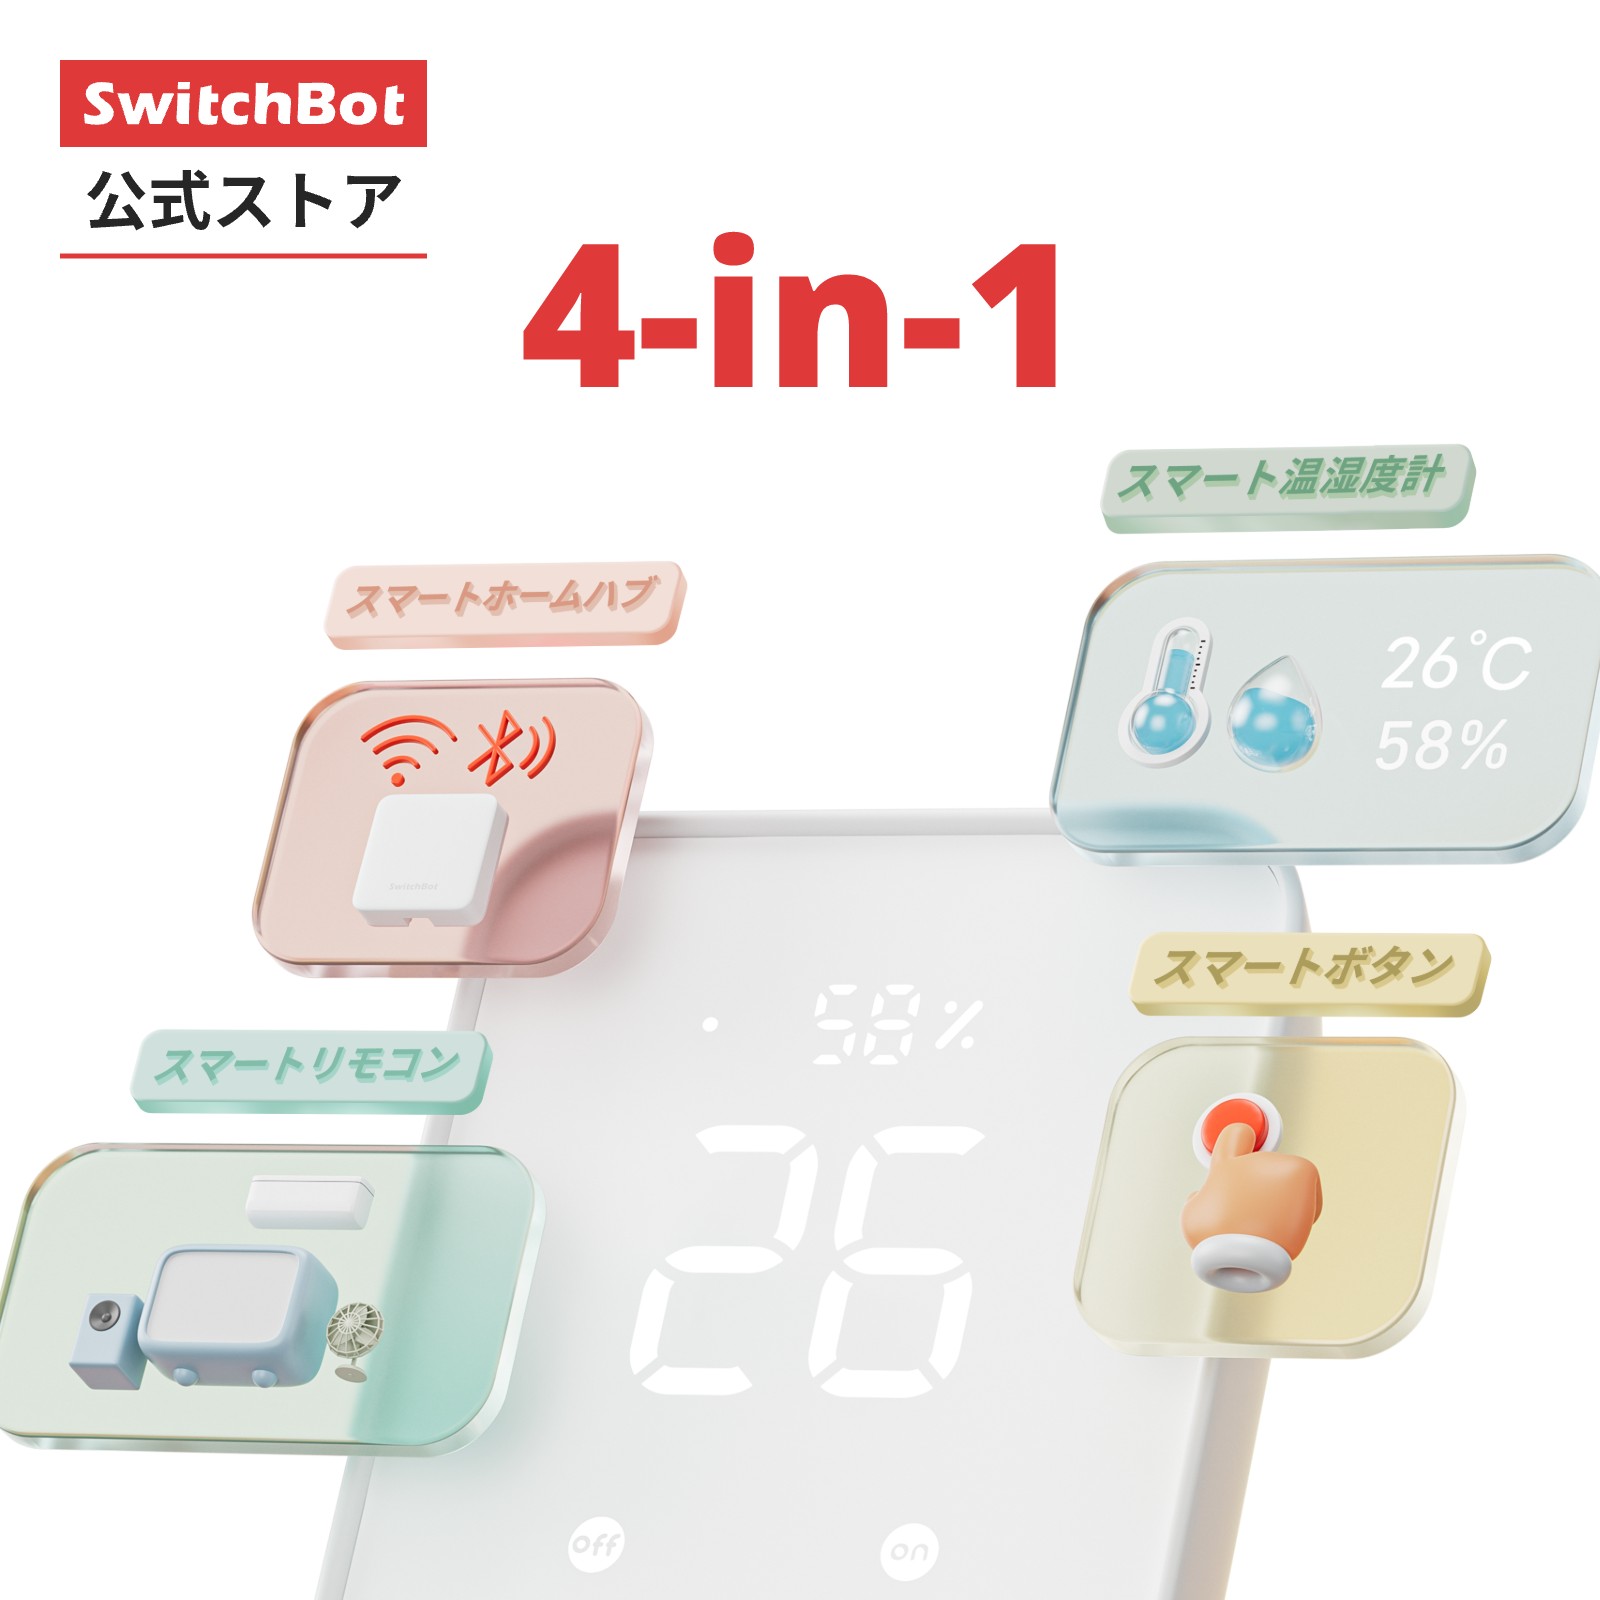 【レビュー特典あり】SwitchBot スマートリモコン 赤外線で家電管理 スマートホーム 温湿度計機能付き 光センサー付き Wi-Fi 簡単設定 スケジュール シーンで家電一括操作 遠隔操作 エアコン …